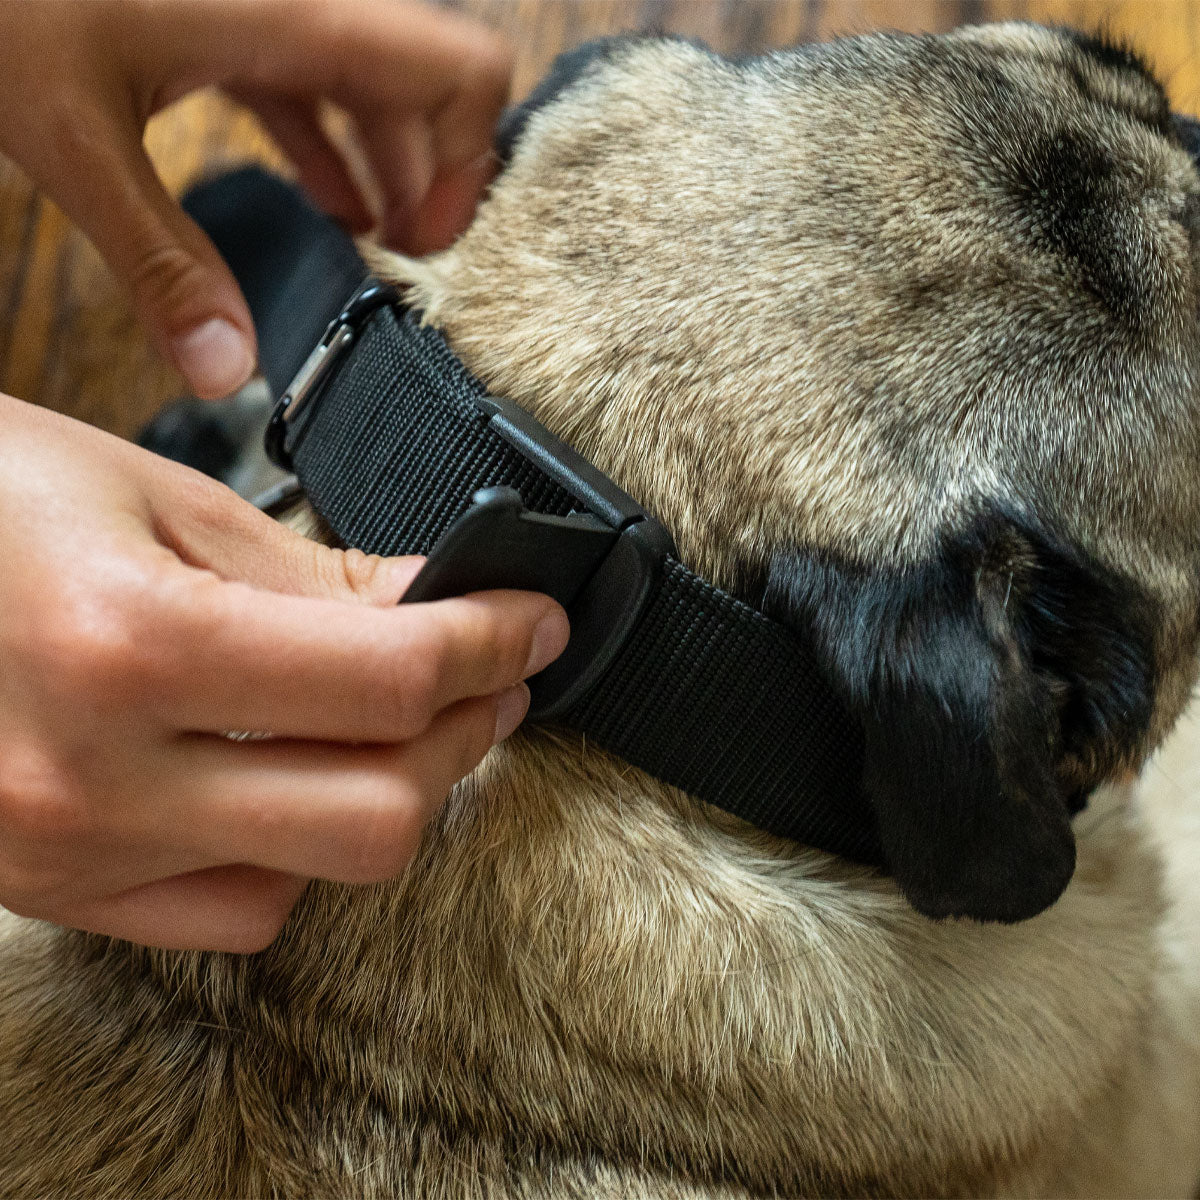 Adjustable Magnetic Dog Collar & Leash - MYCLEVERLIFE